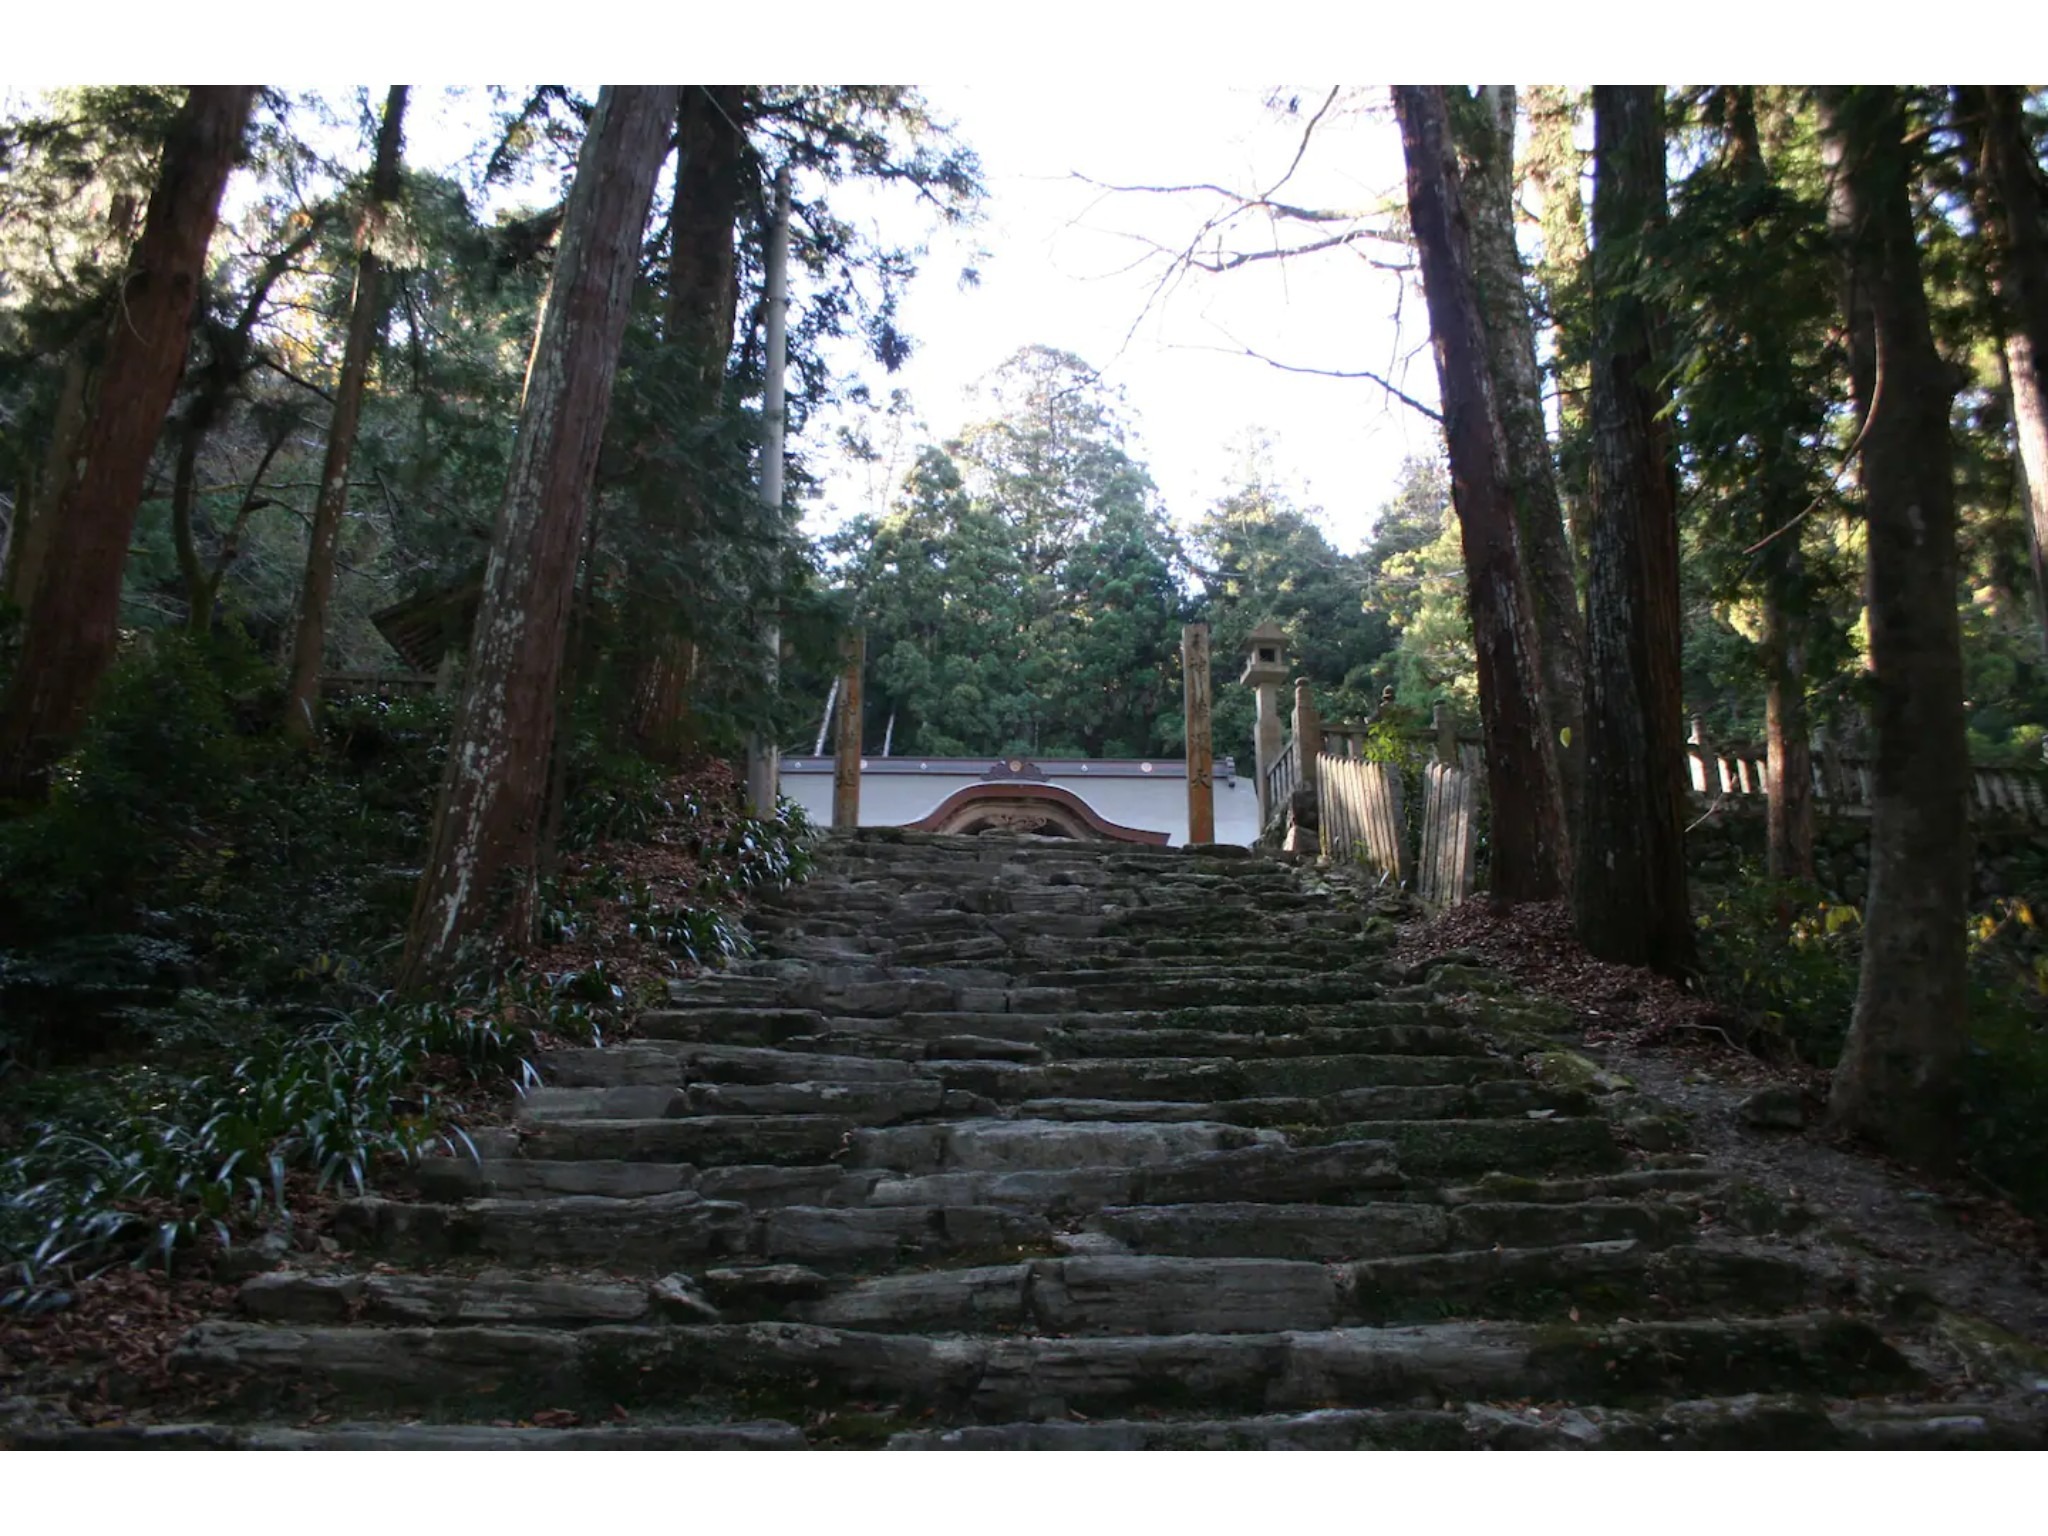 作良家(さらや)の母屋 神山町、築150年の伝統家屋